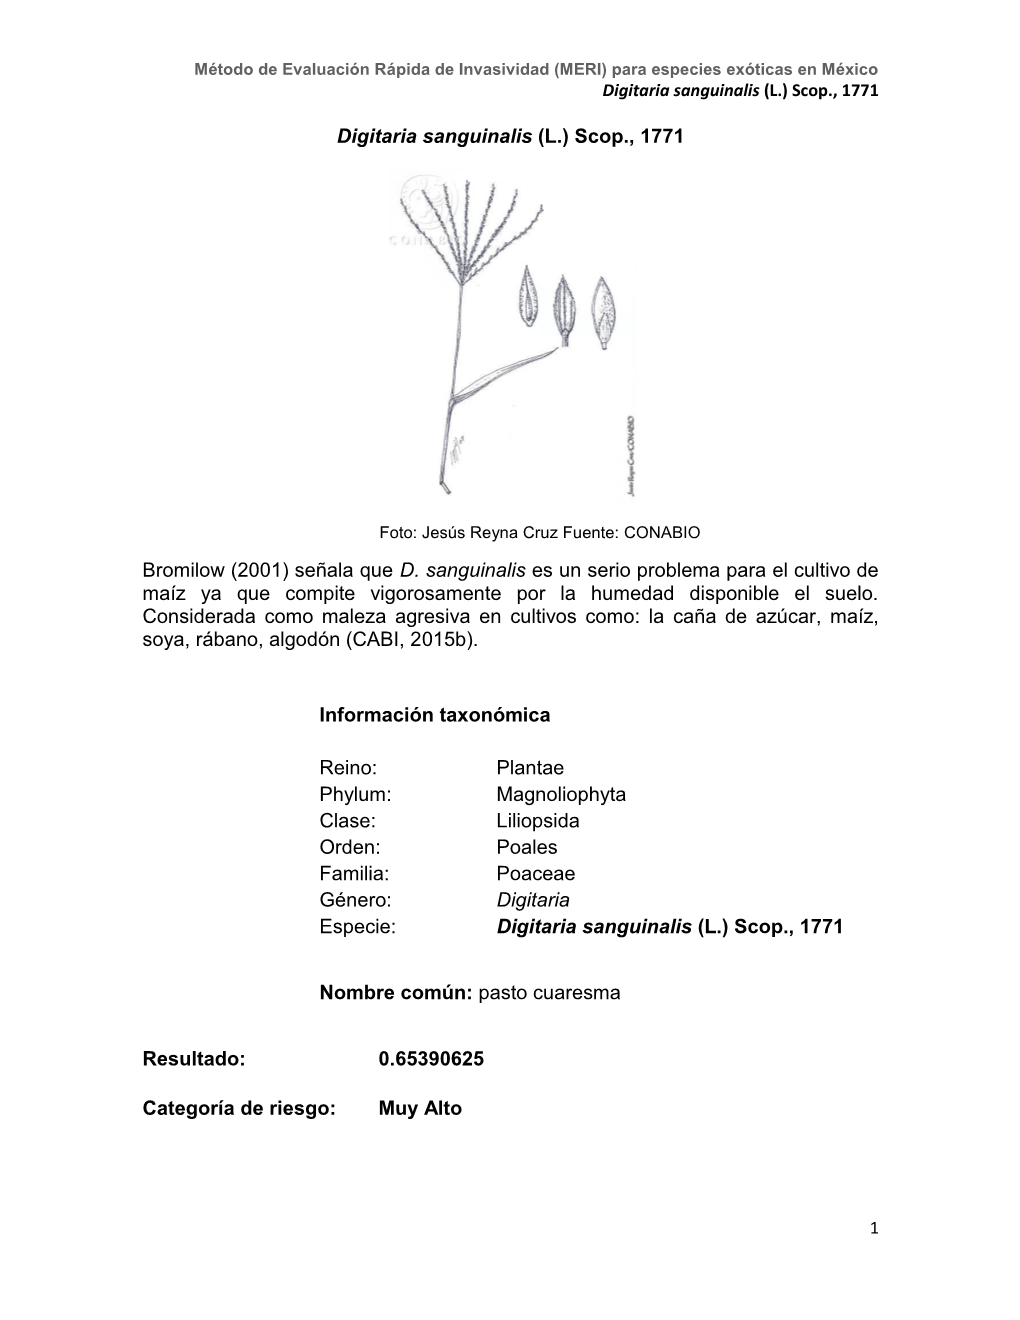 Digitaria Sanguinalis (L.) Scop., 1771 Bromilow